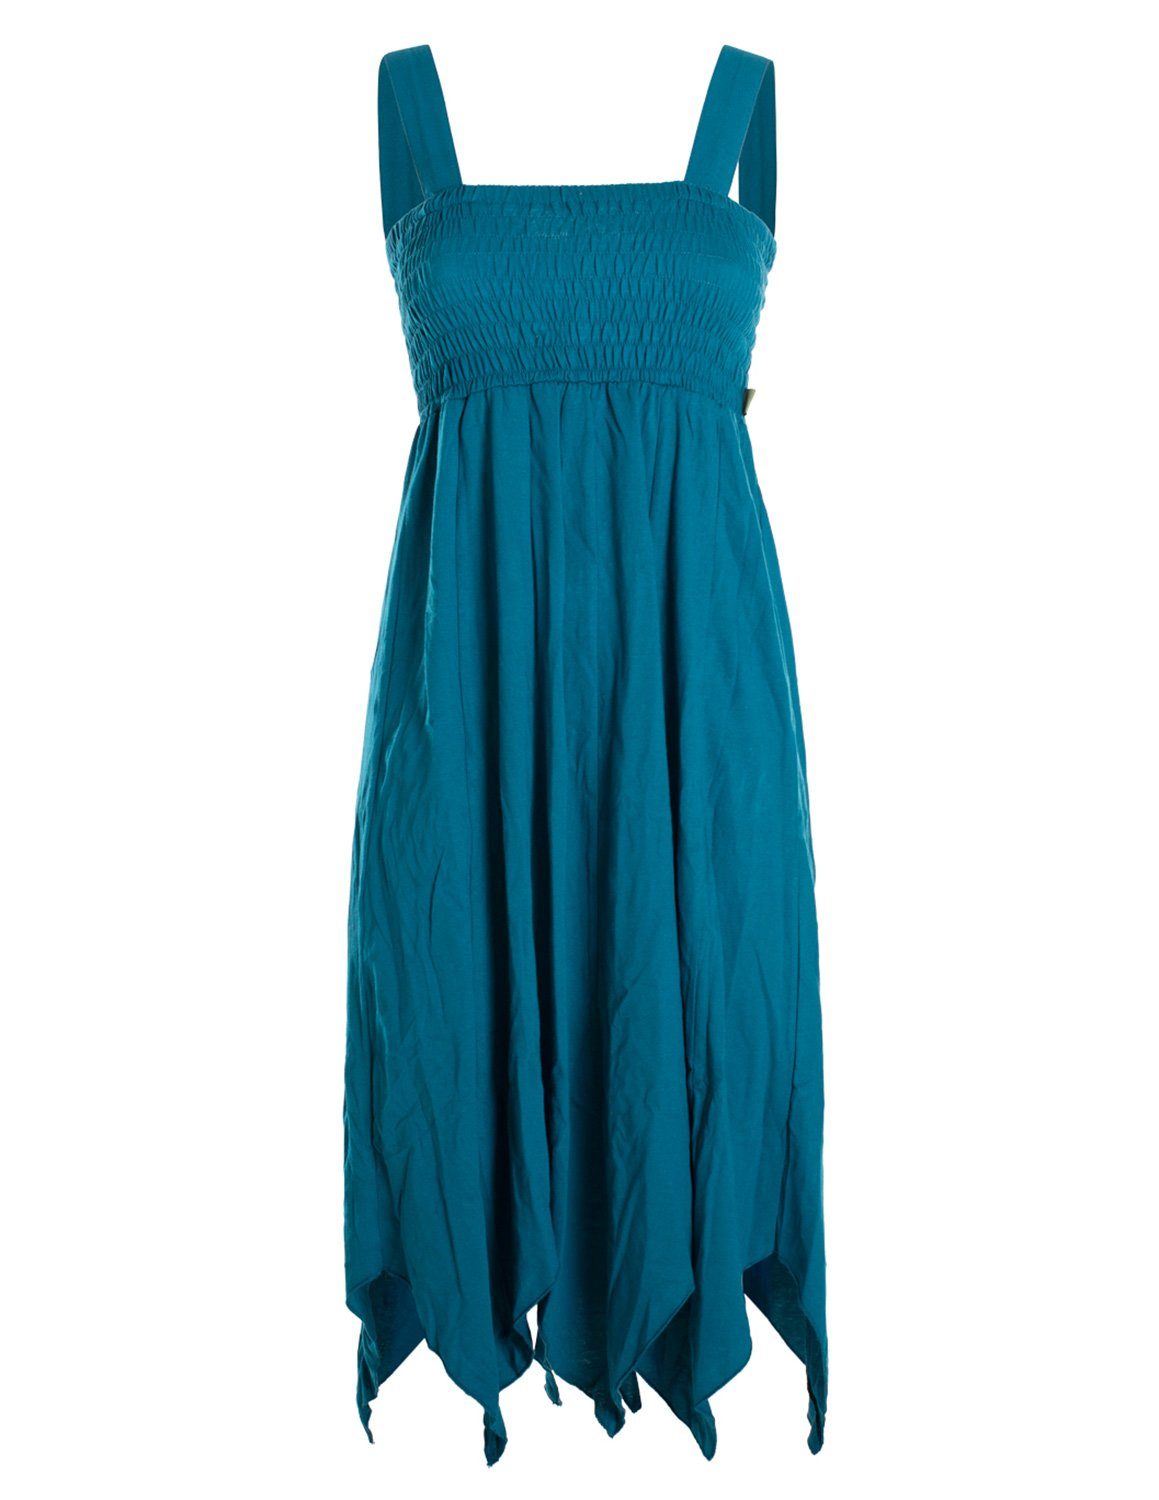 Vishes Zipfelkleid Langes Sommerkleid aus Bio Baumwolle mit Zipfeln und breiten Trägern Goa, Hippie, Style, Strandkleid türkis